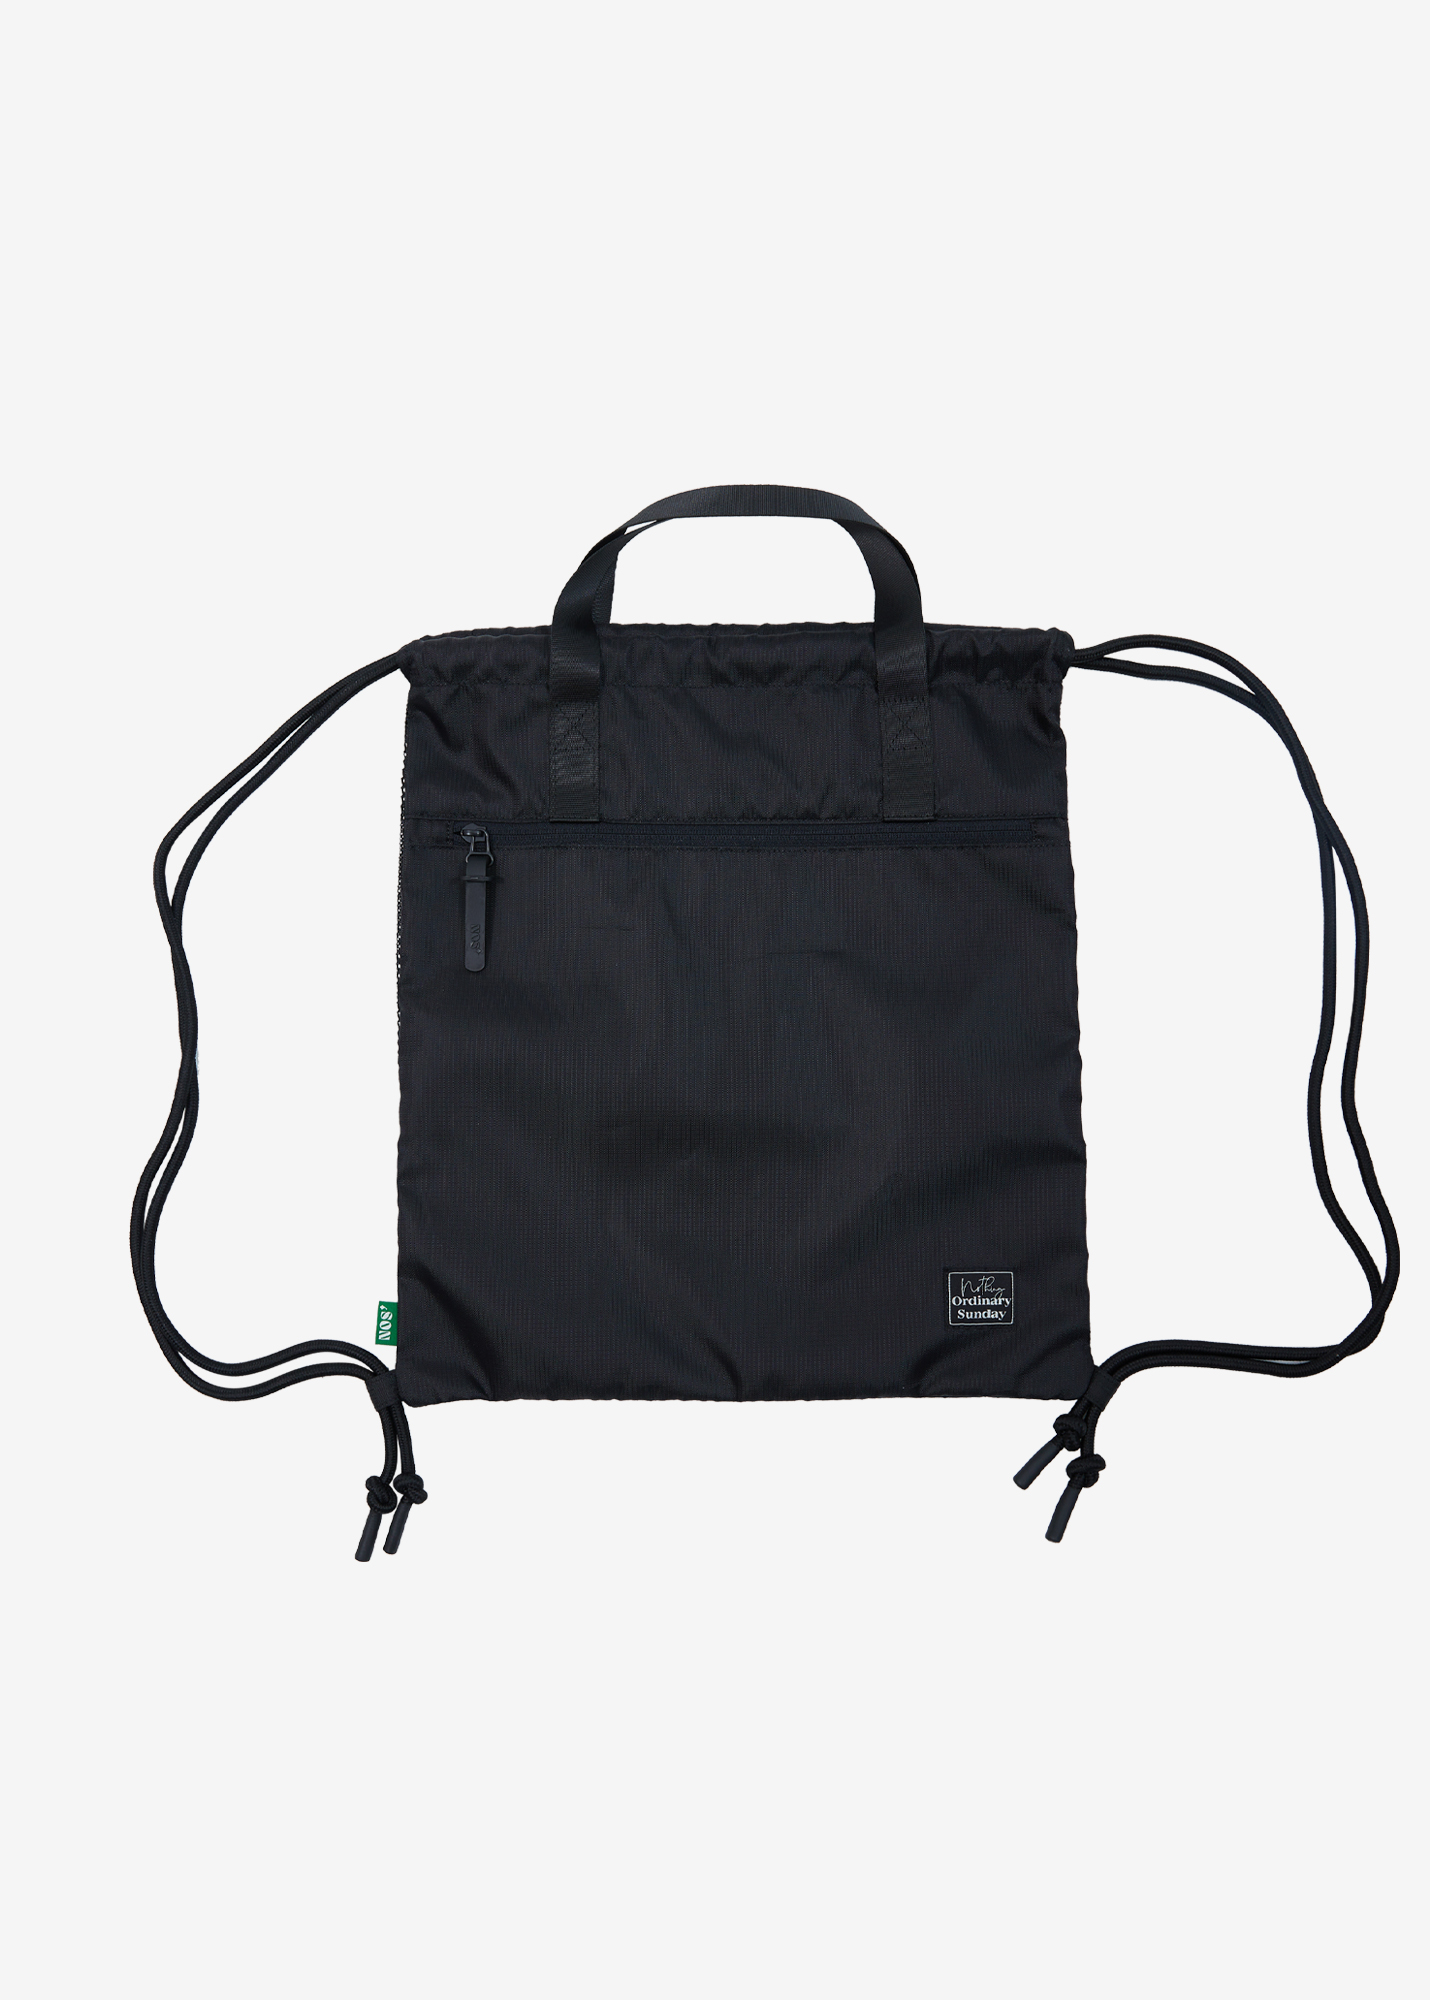 NOS7 Mesh backpack - Black